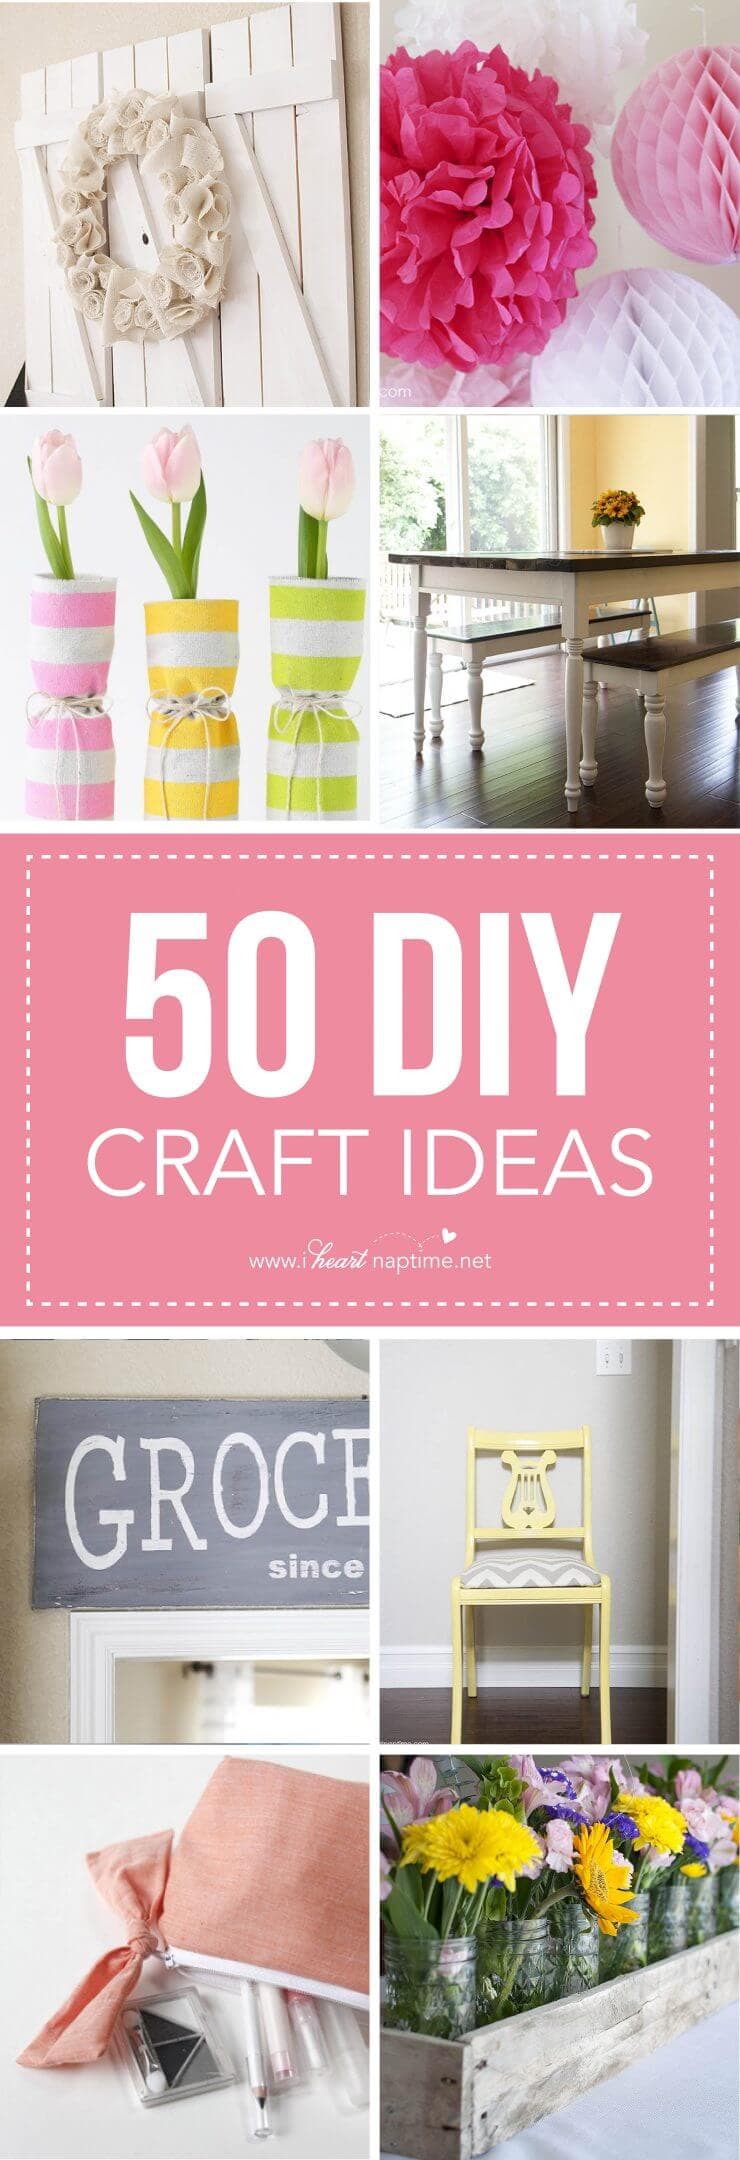 50 DIY craft ideas 